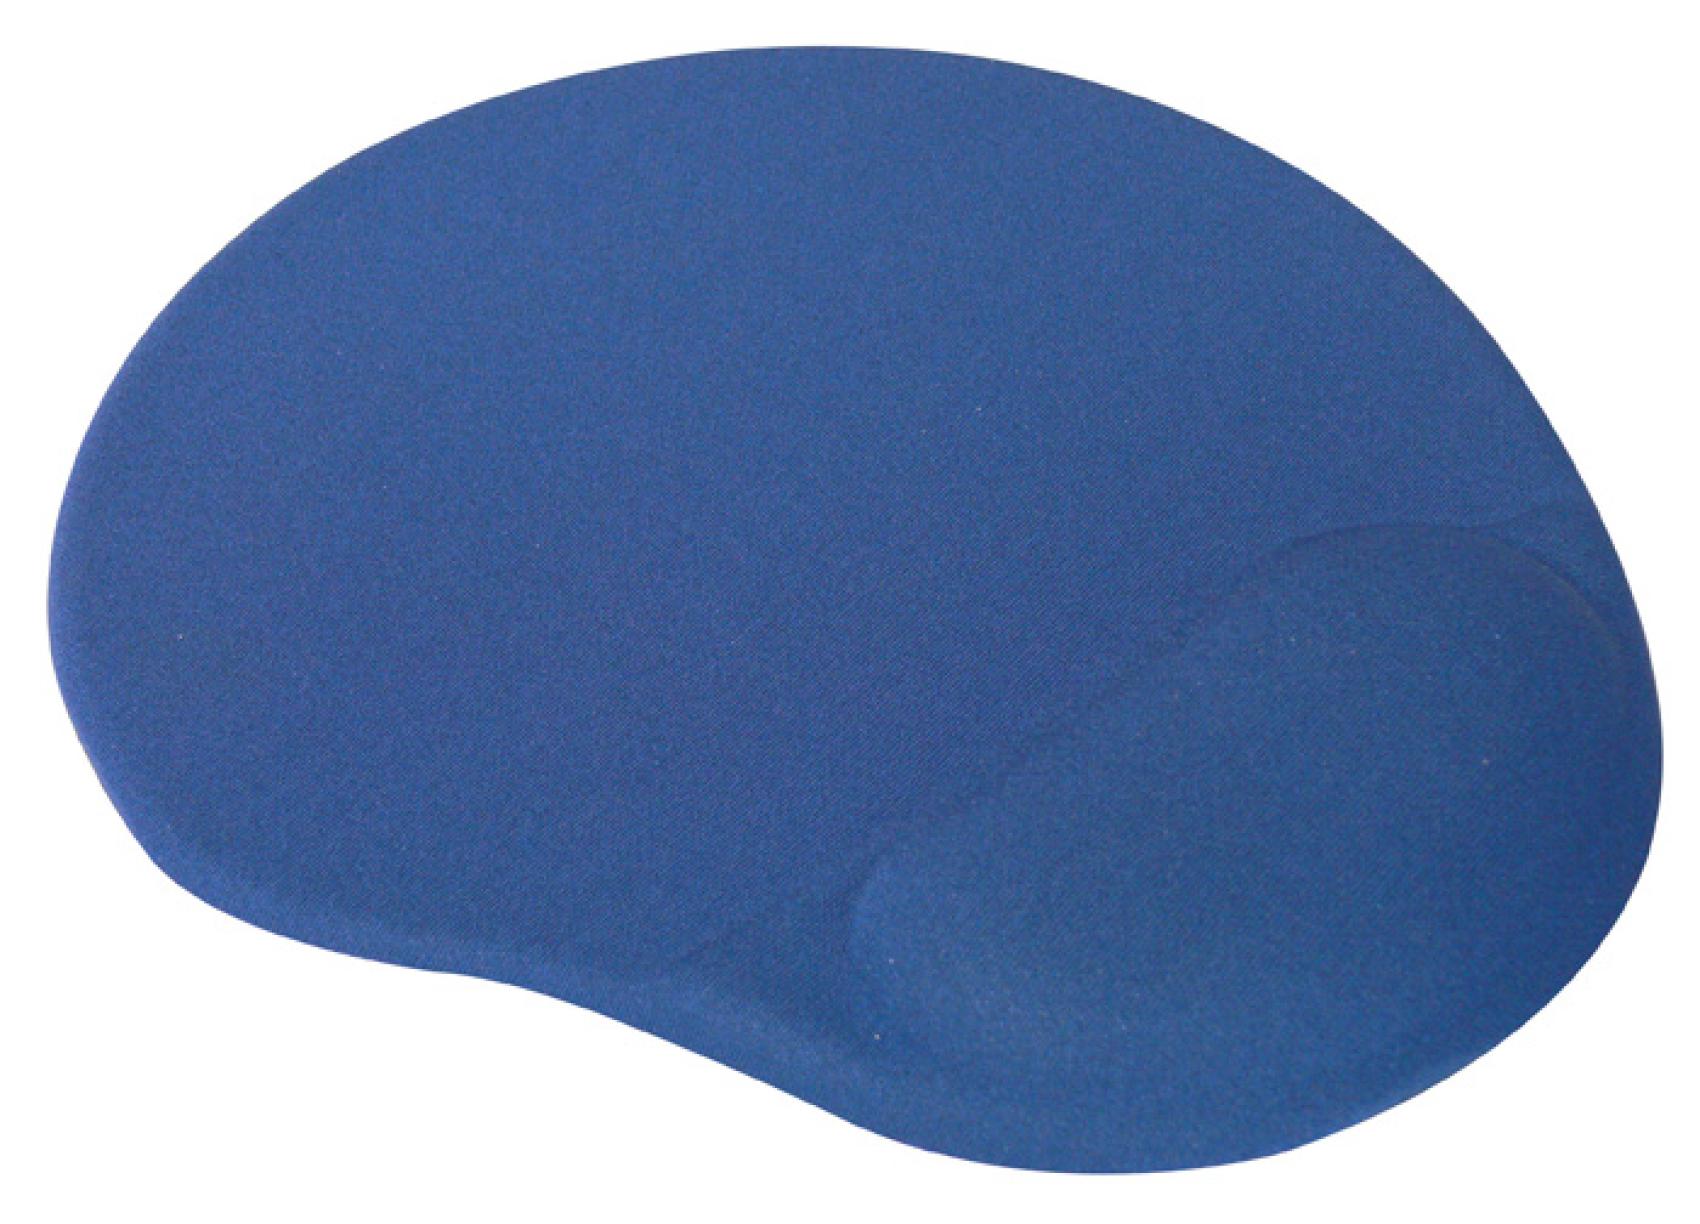 Podloka my gelov Logo modr - Kliknutm na obrzek zavete